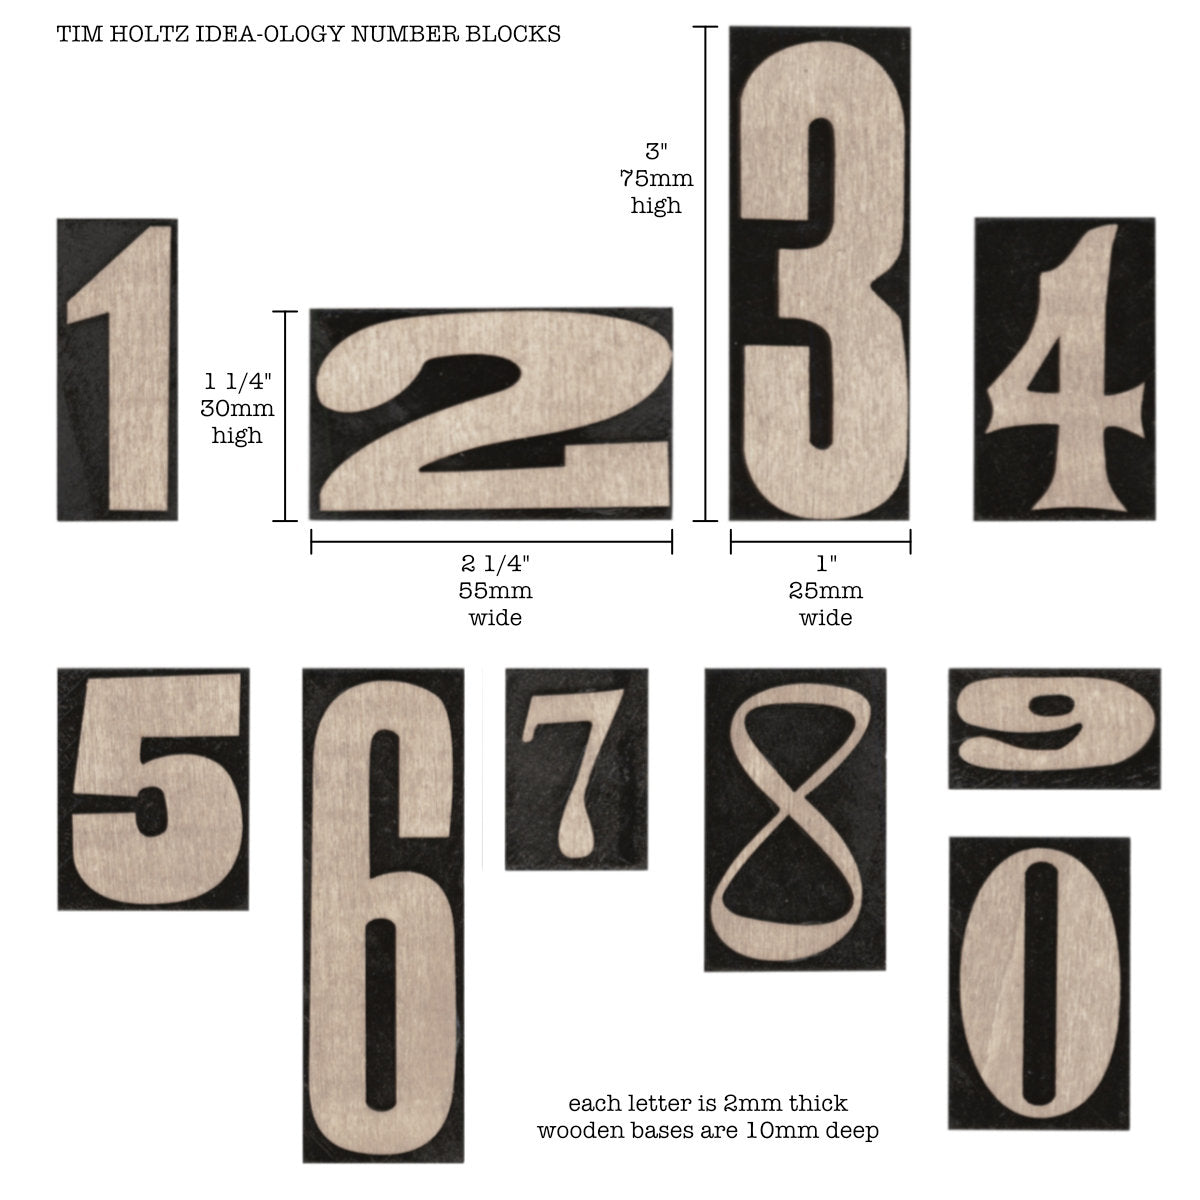 Tim Holtz Idea-Ology - Wooden Vignette Number Blocks